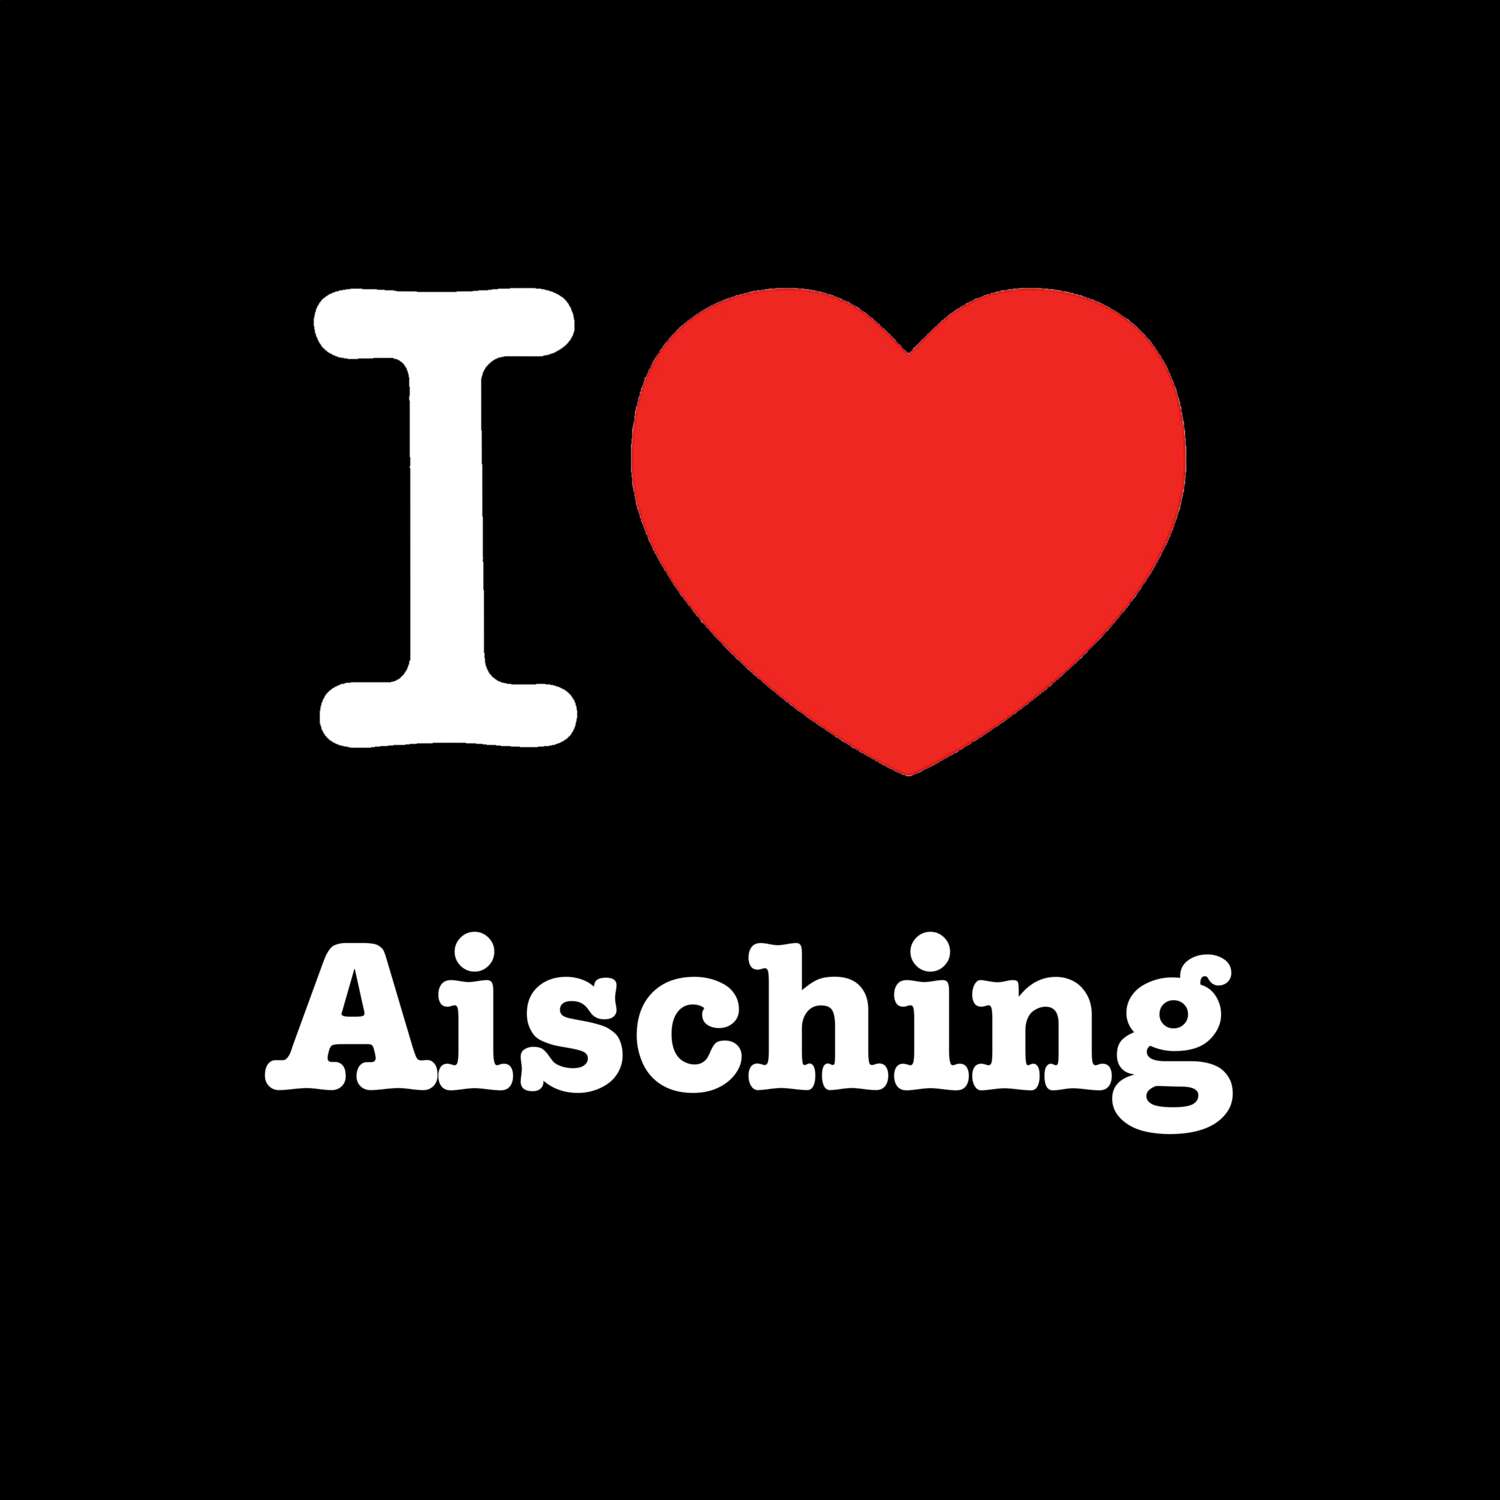 Aisching T-Shirt »I love«